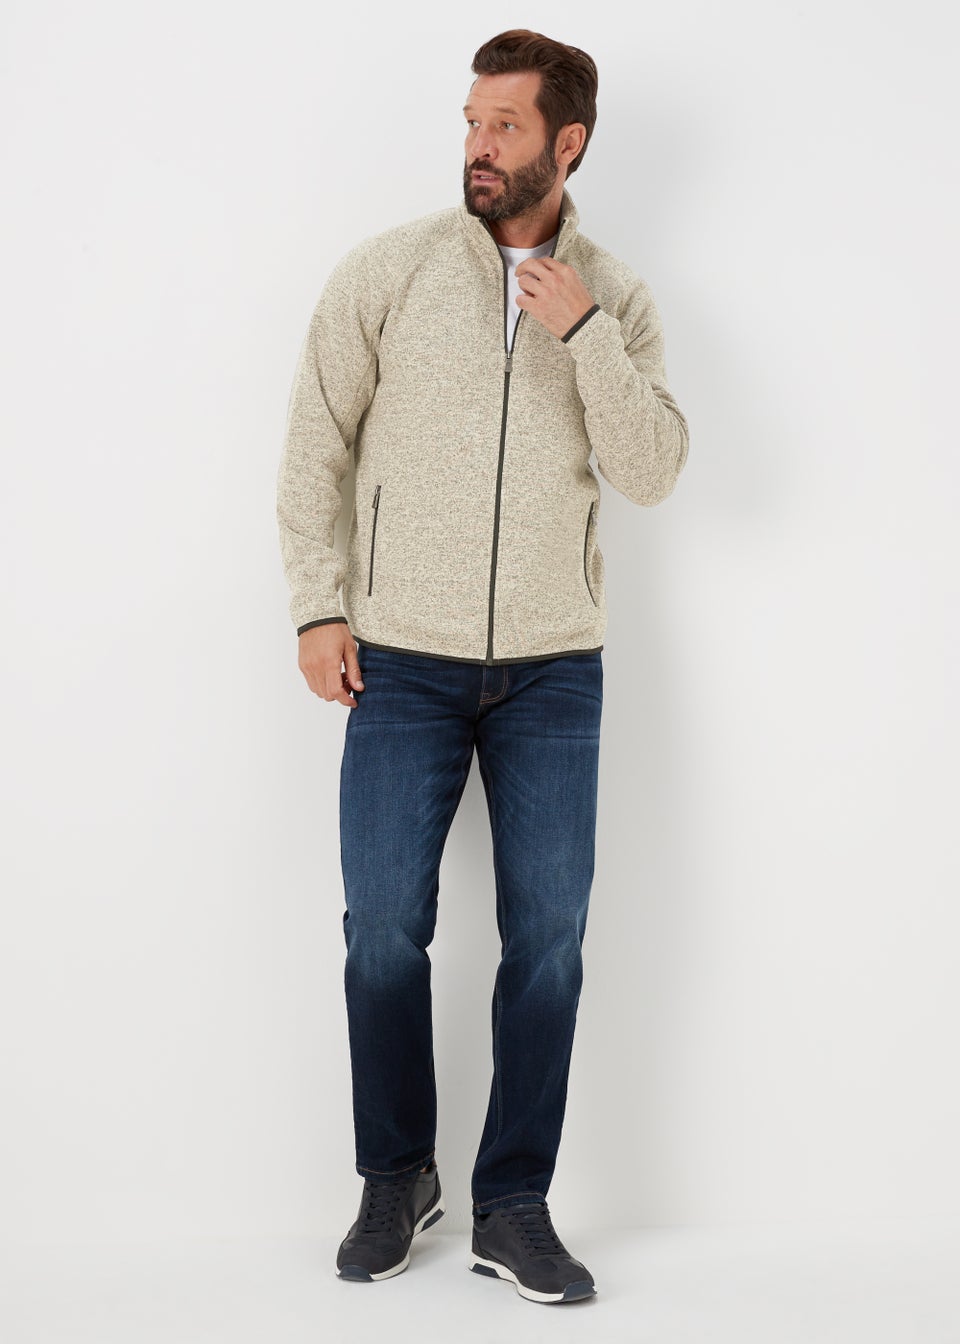 Lincoln Ecru Textured Fleece Zip Up Jacket